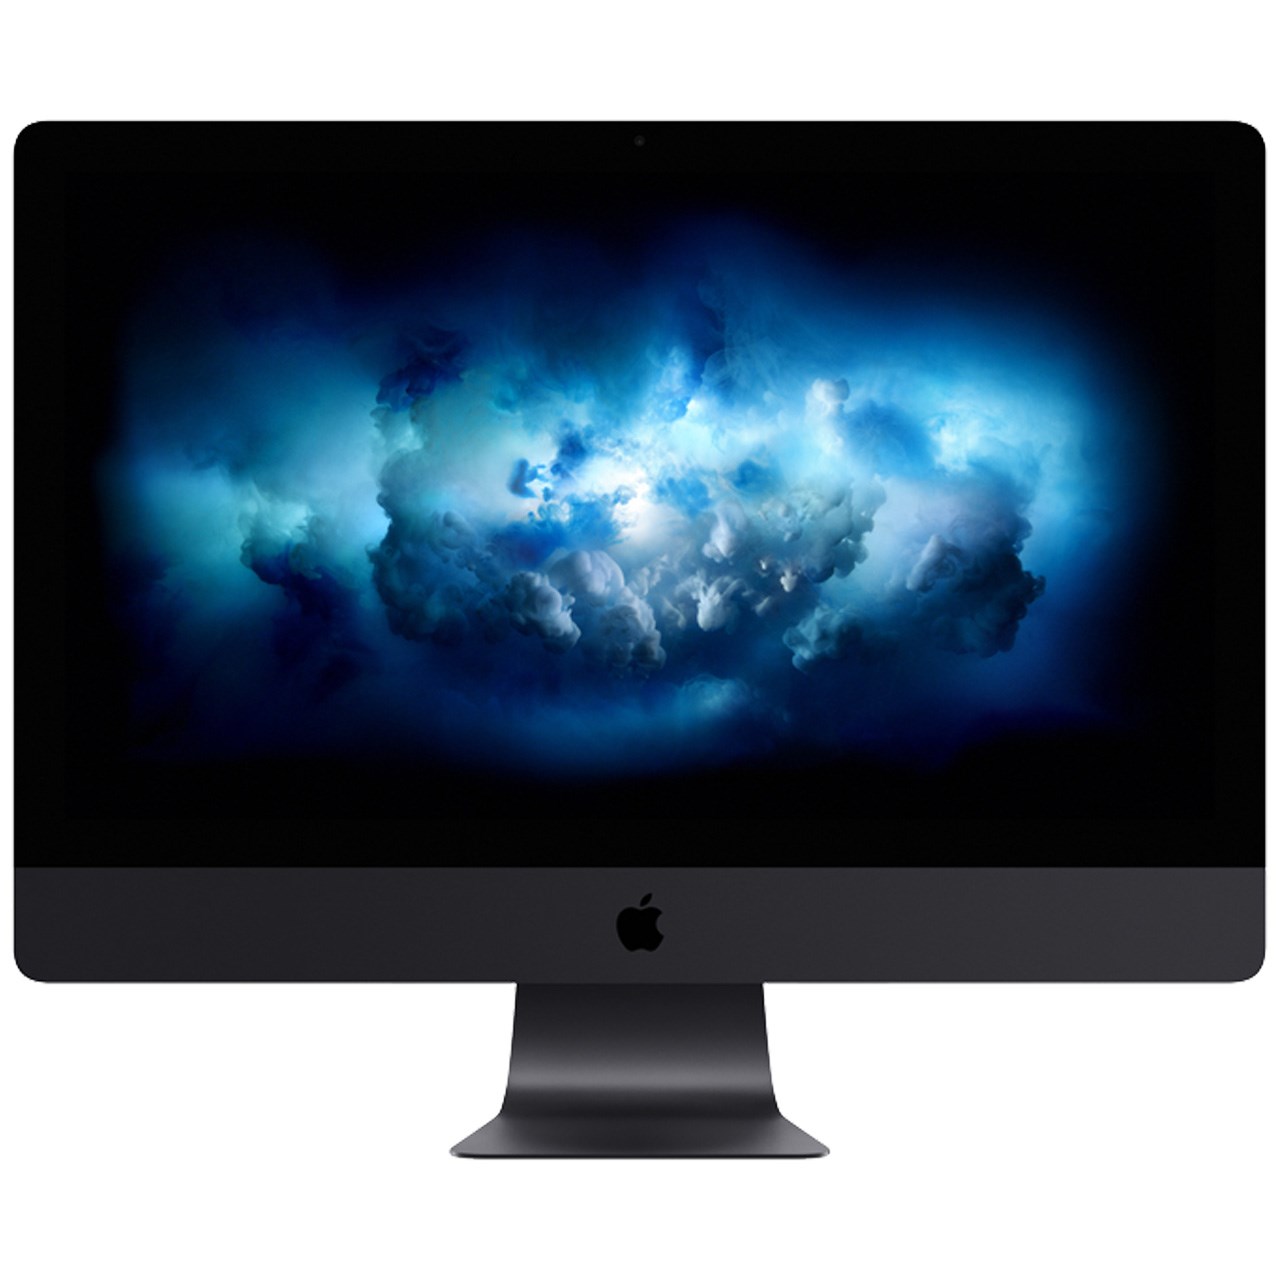 فروش جهانی کامپیوتر قدرتمند ۲۷ اینچی iMac Pro با قیمت پایه‌ی 4999 دلاری از امروز شروع شد